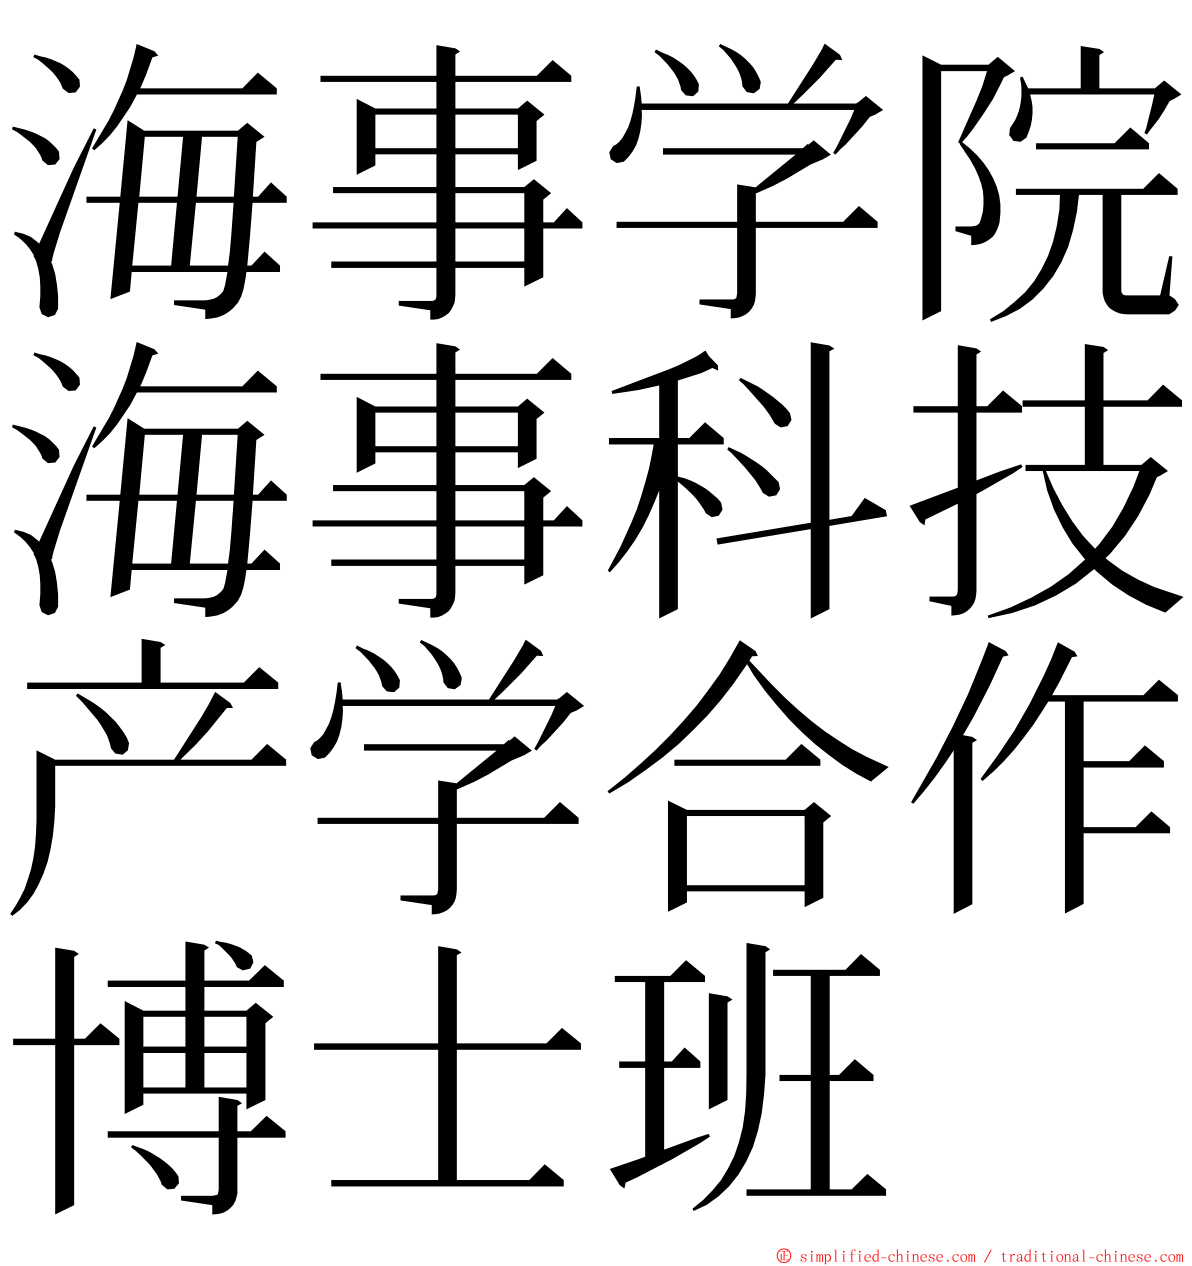 海事学院海事科技产学合作博士班 ming font